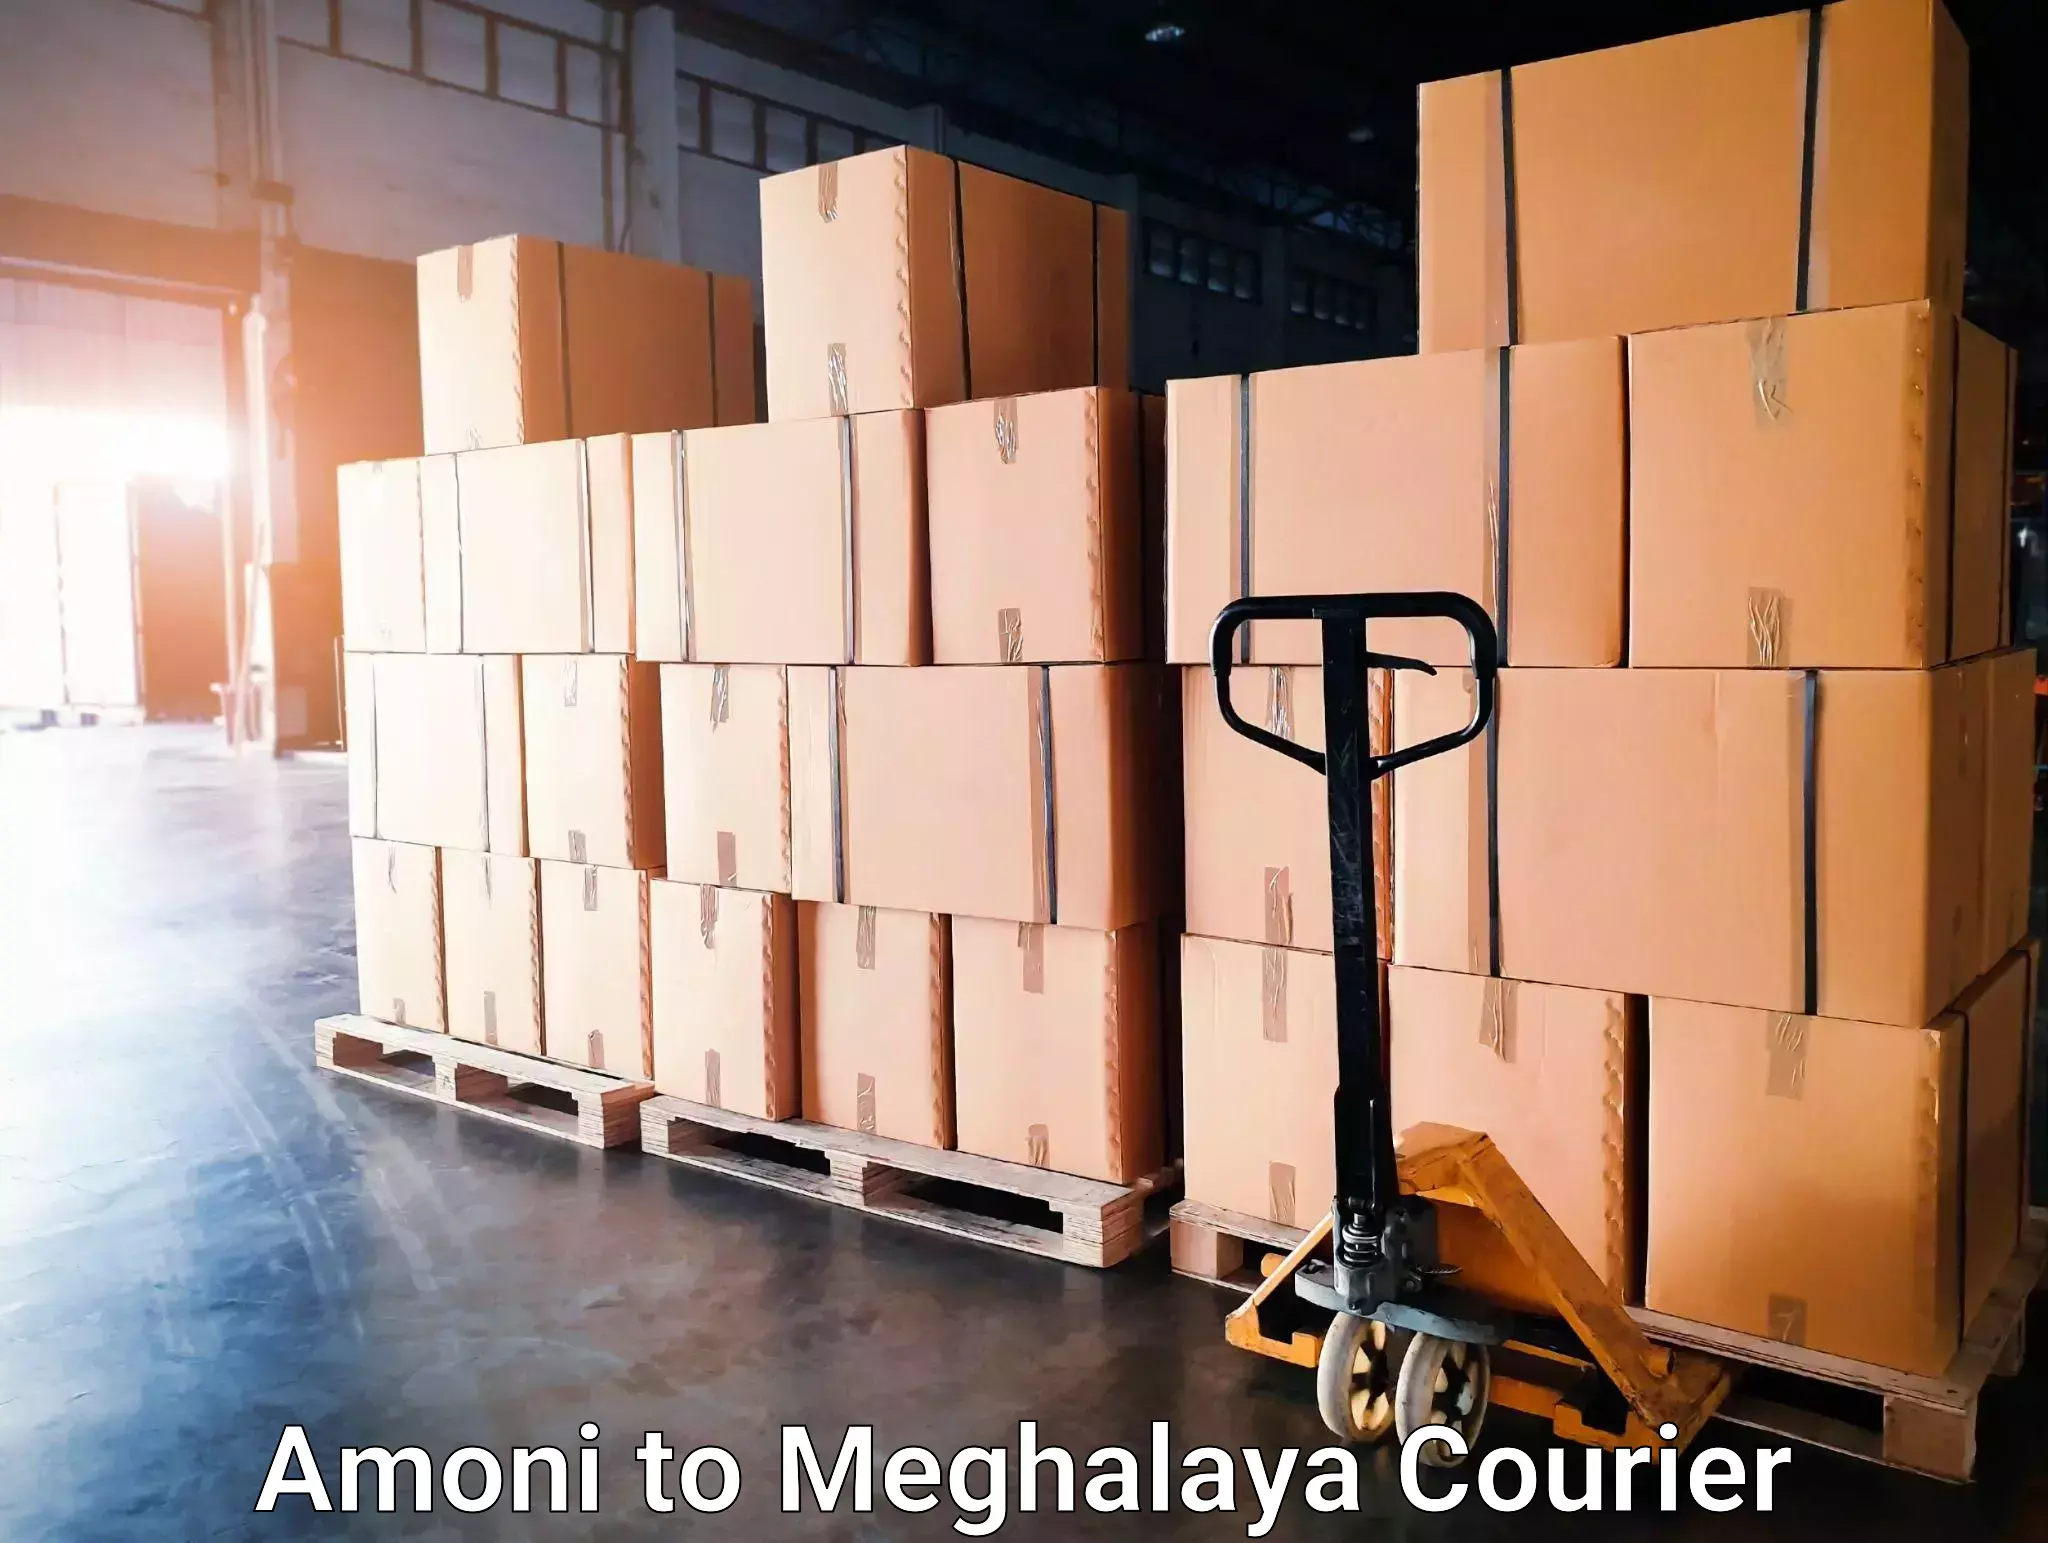 Courier service innovation Amoni to Meghalaya